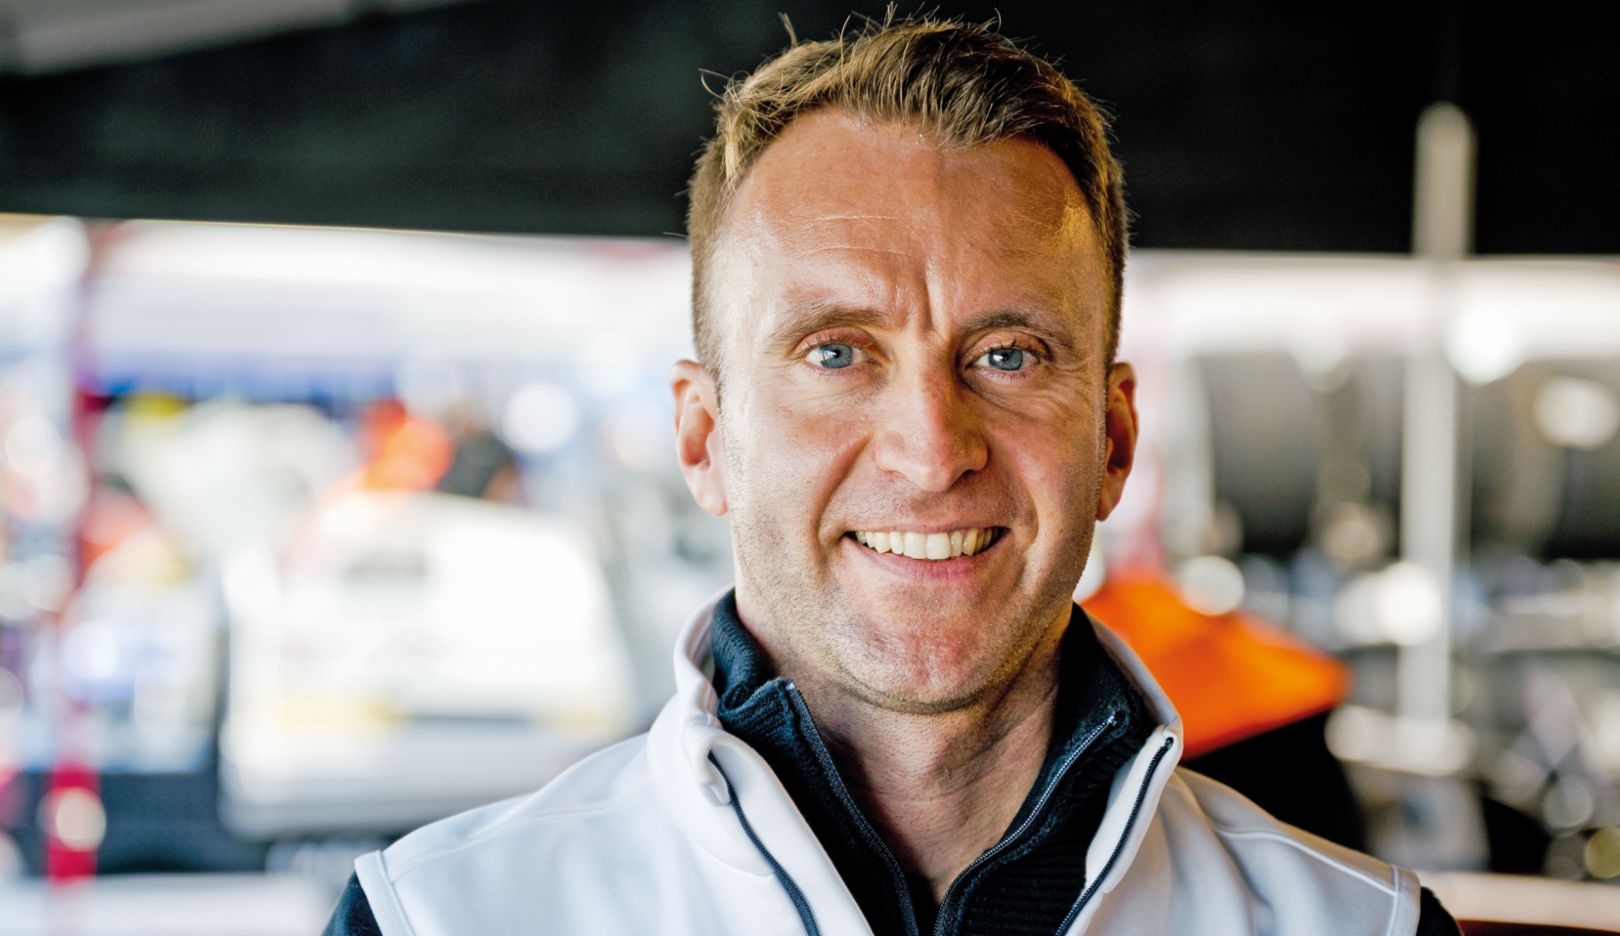 «Aquí todos estamos unidos por nuestra pasión por Porsche, ya sea como piloto en activo o retirado, embajador de marca, aficionado o dueño de vehículos excéntricos». Timo Bernhard